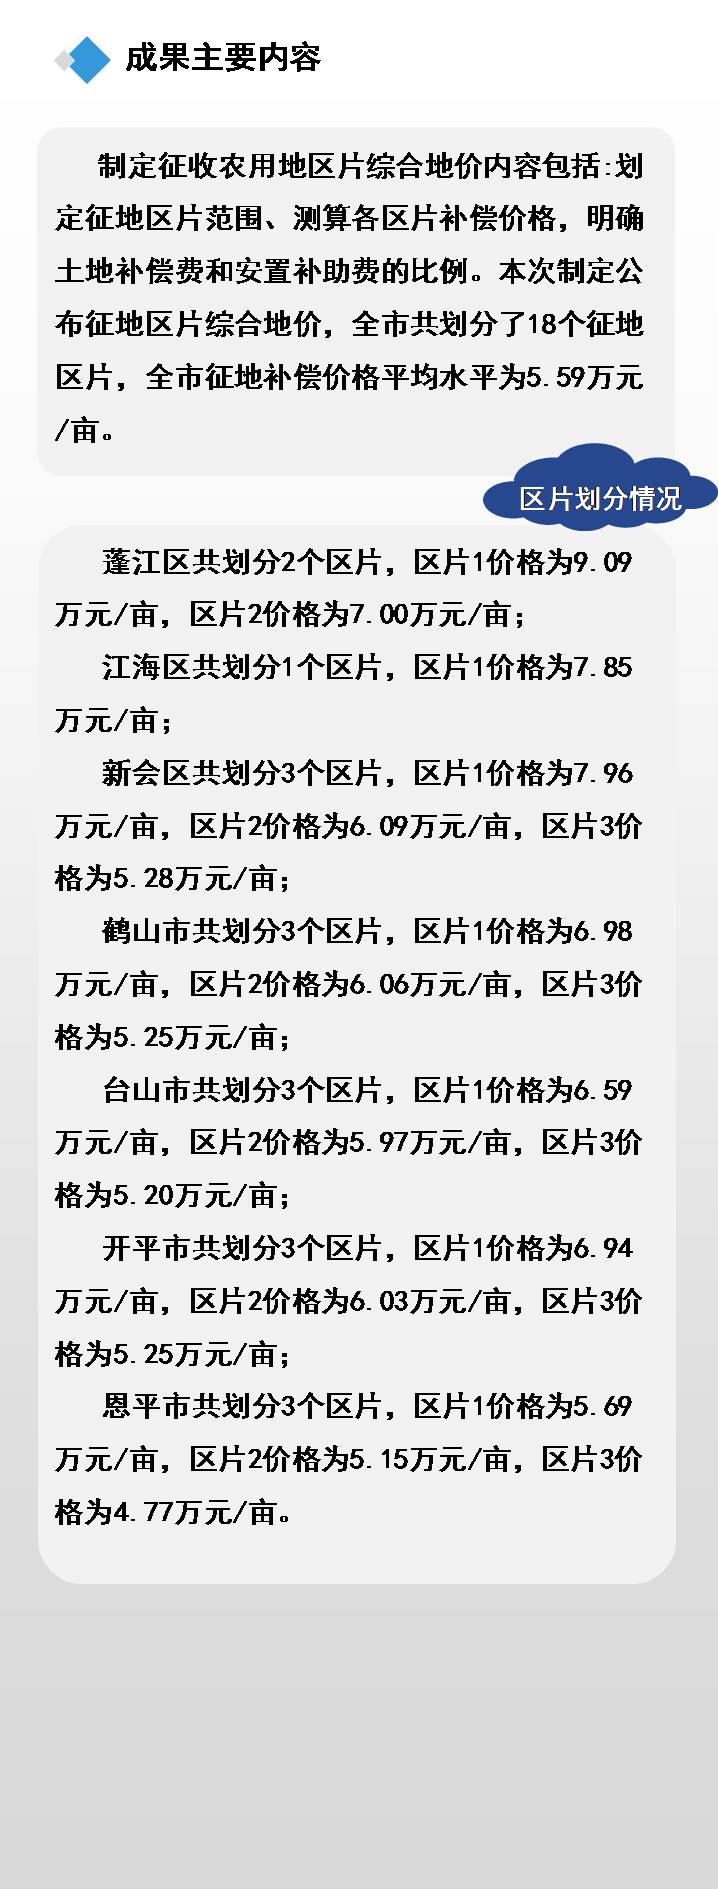 210223江门市征收农用地区片综合地价项目图解 (6).JPG